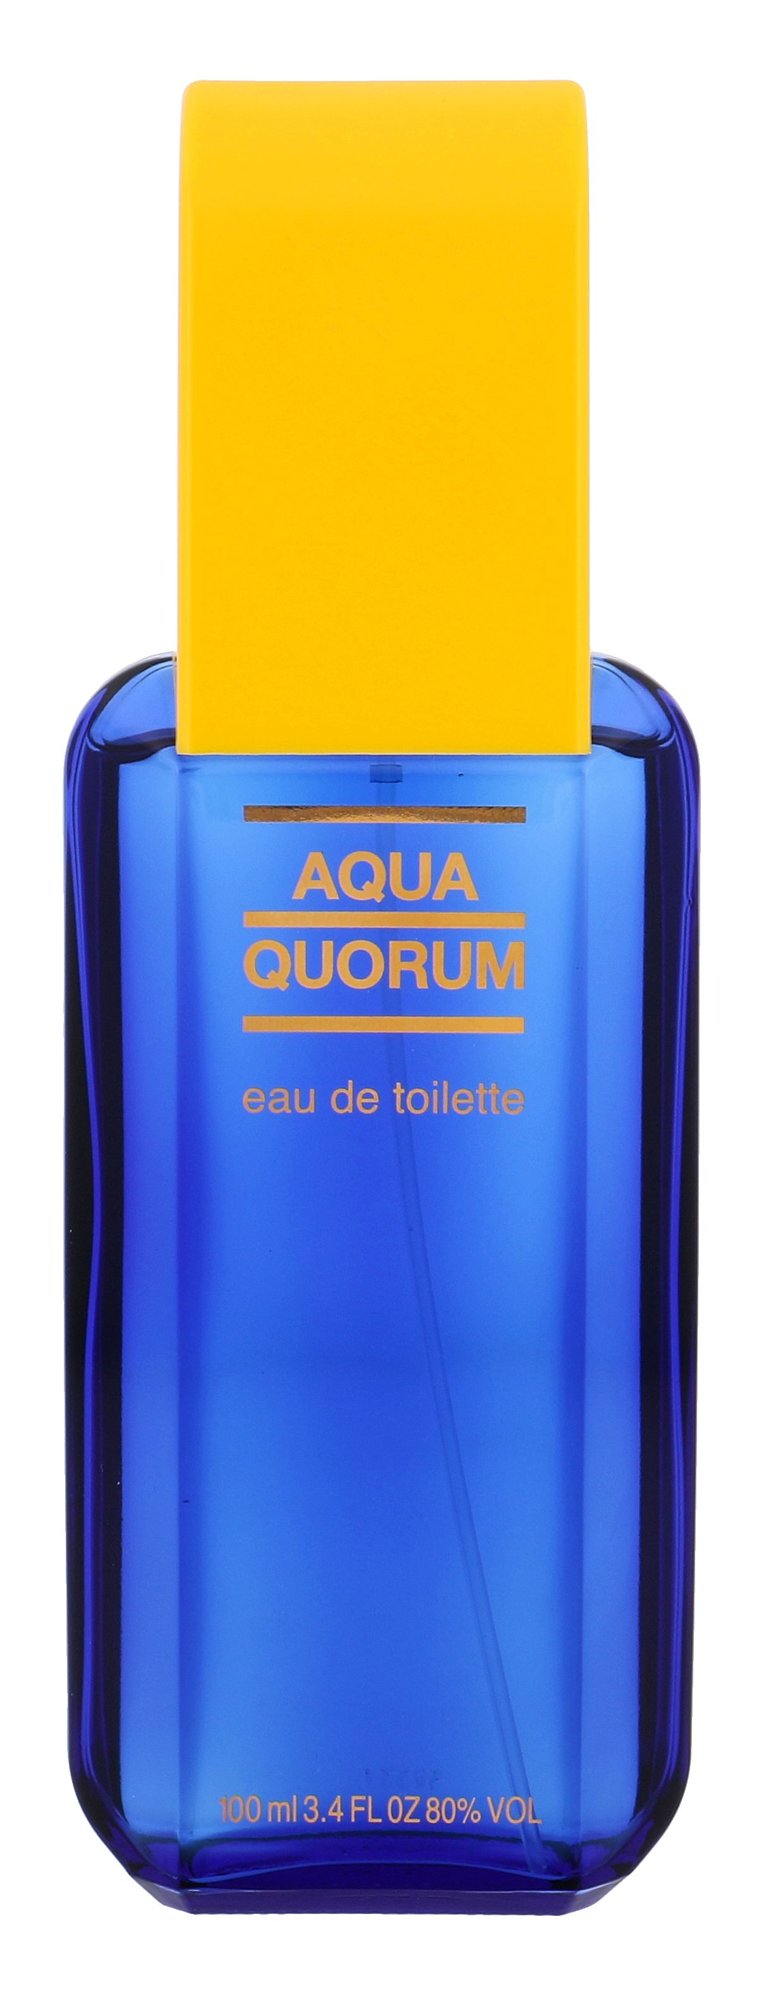 Antonio Puig Agua Quorum